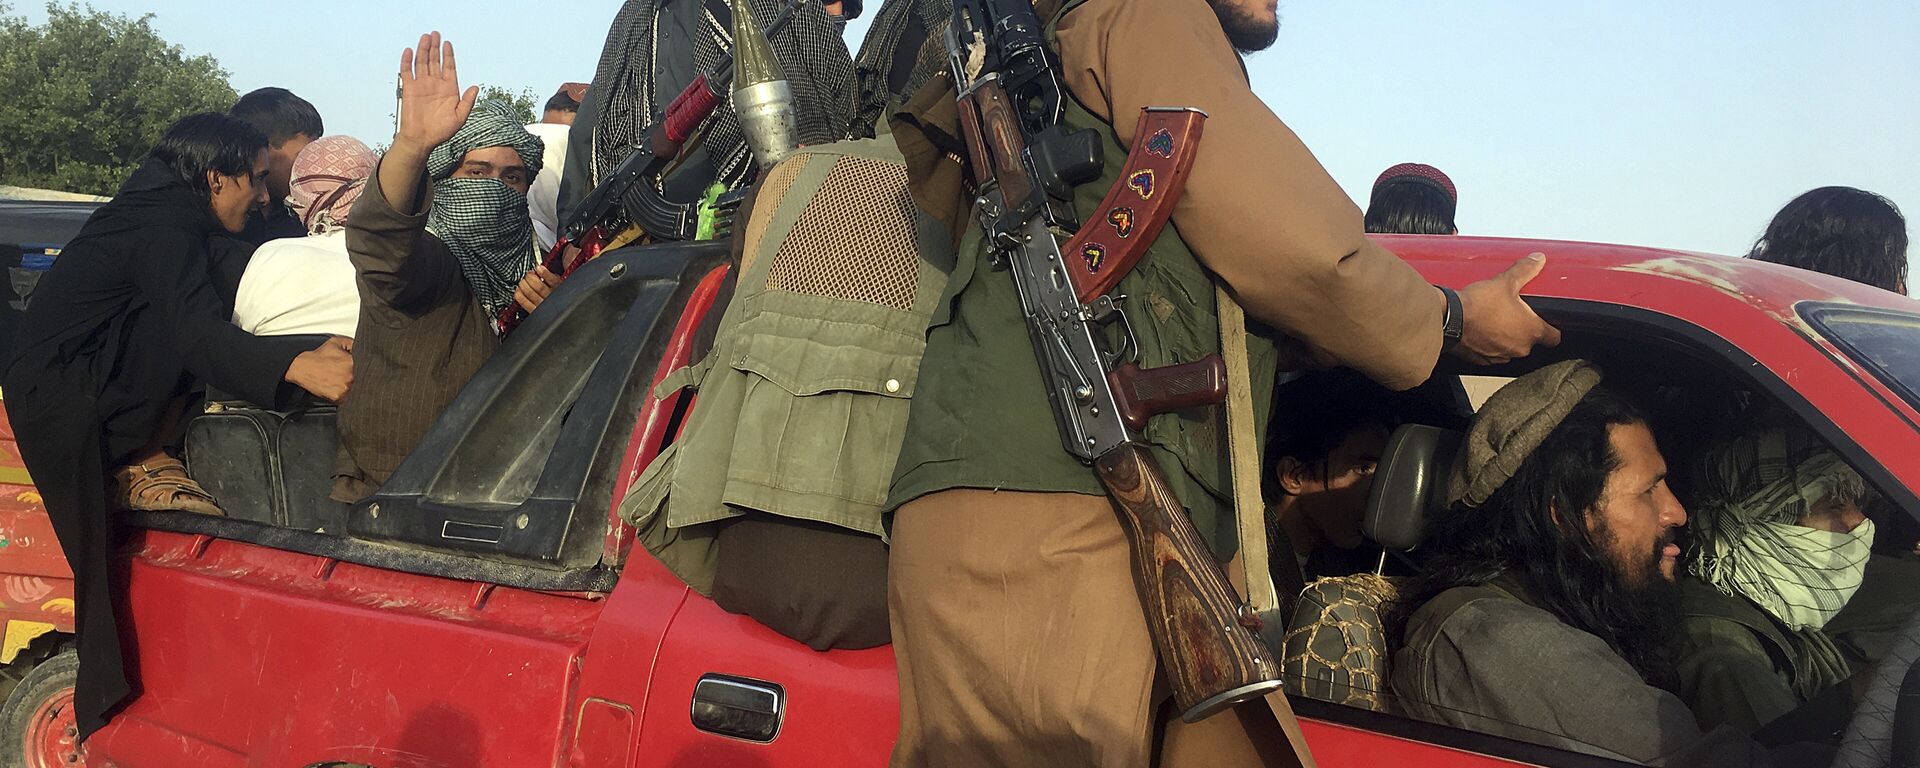 Боевики Талибан в провинции Нангархар на востоке Афганистана - Sputnik Таджикистан, 1920, 06.07.2021